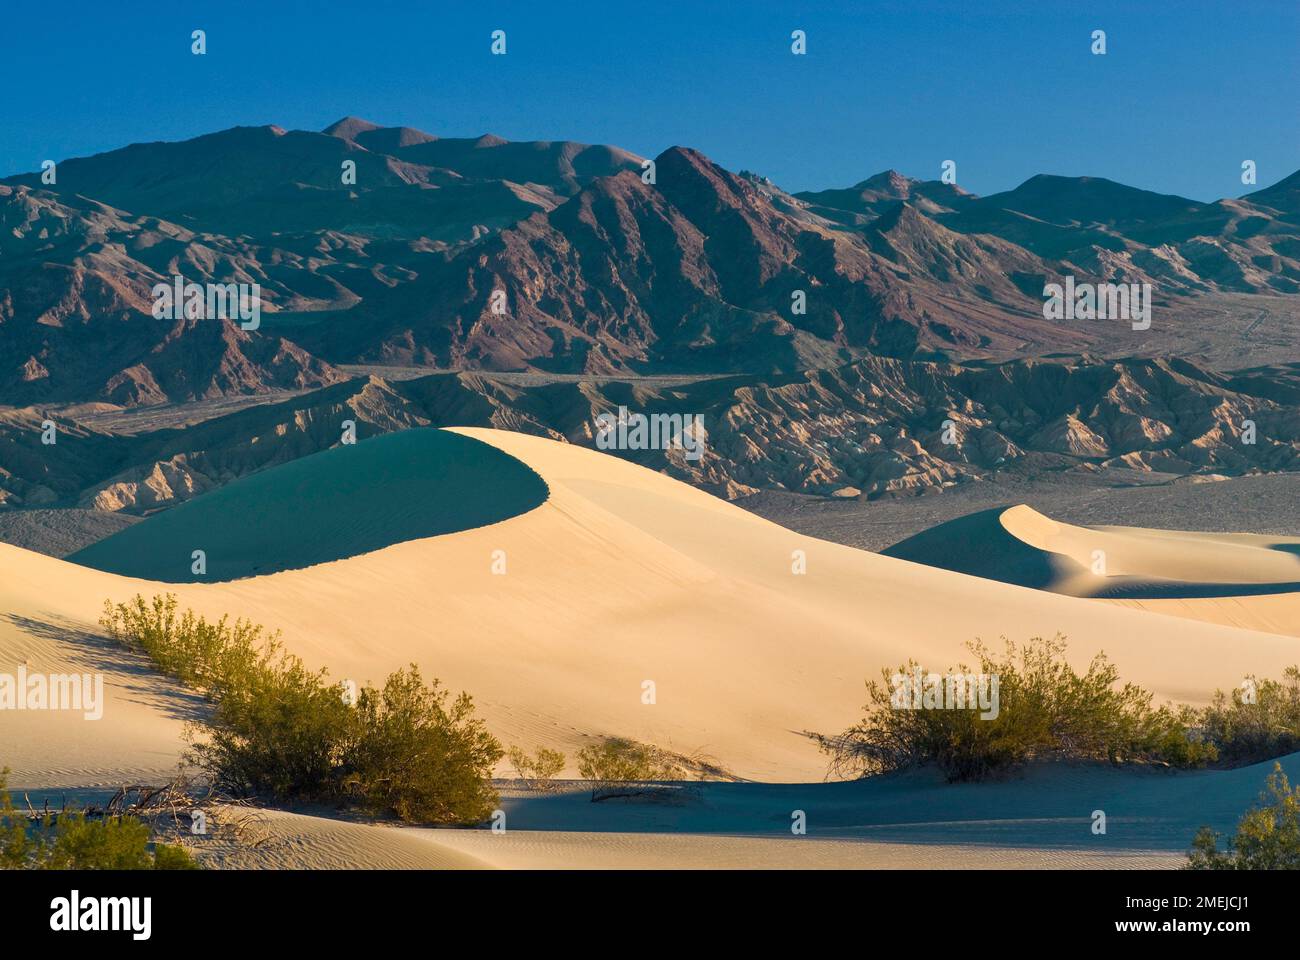 Dunes de sable de Mesquite Flat, brousse créosote, montagnes de la chaîne Amargosa, lever du soleil, Parc national de la Vallée de la mort, Californie, États-Unis Banque D'Images